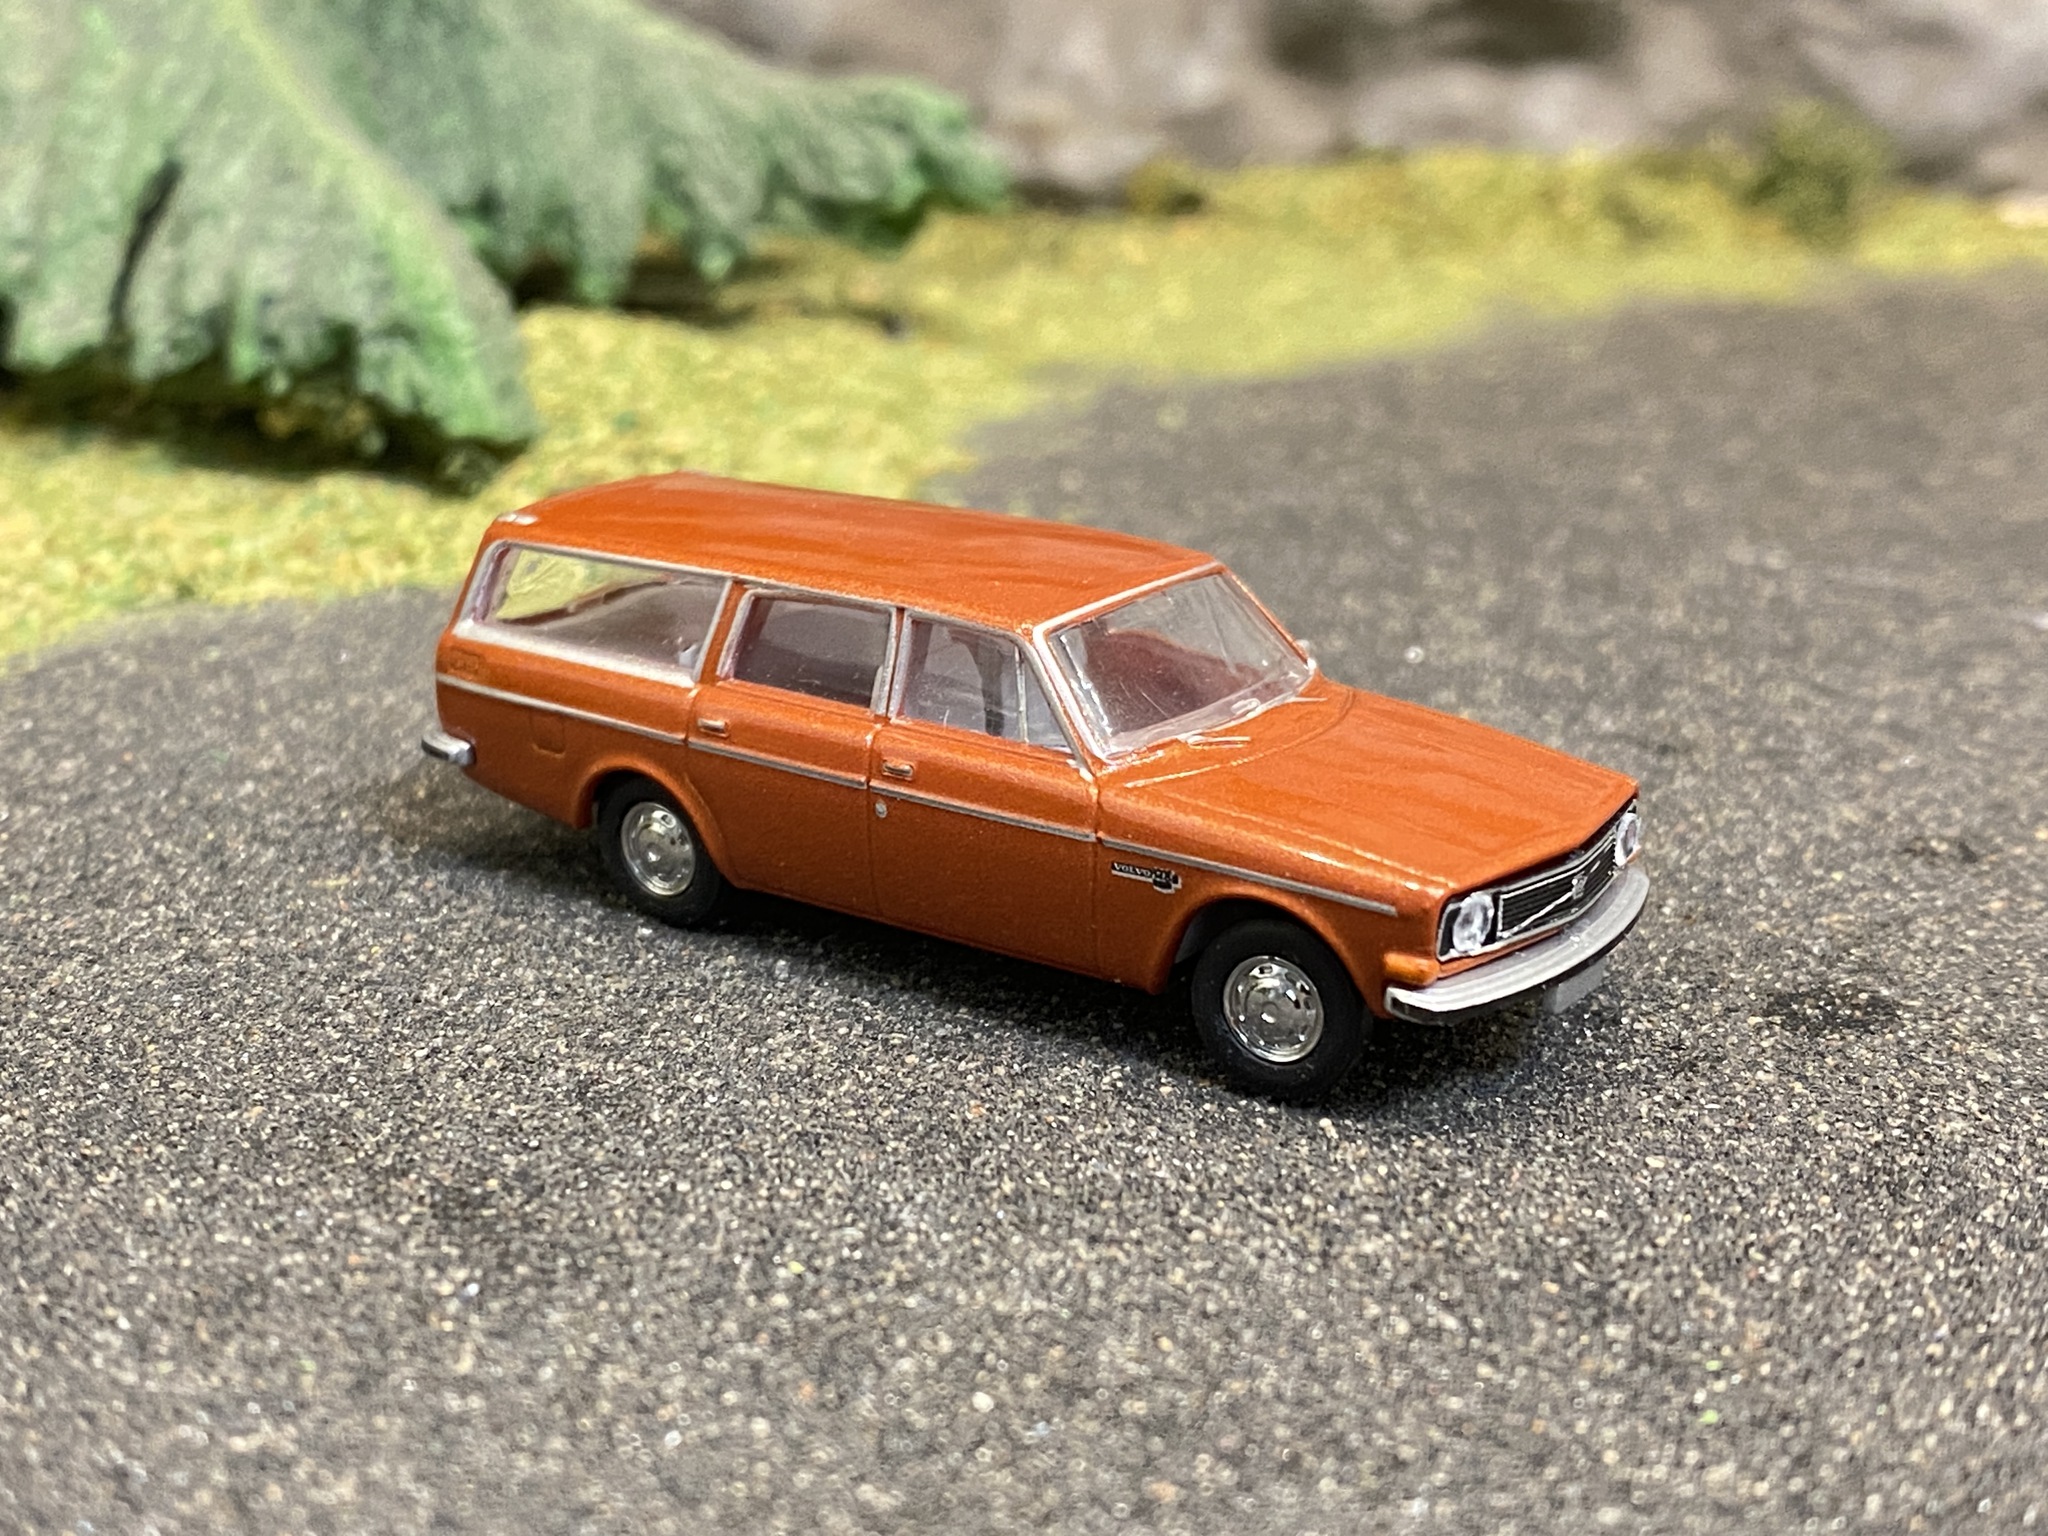 NYHET! Skala 1/87 - Volvo 145, Kopparröd/brun från Brekina